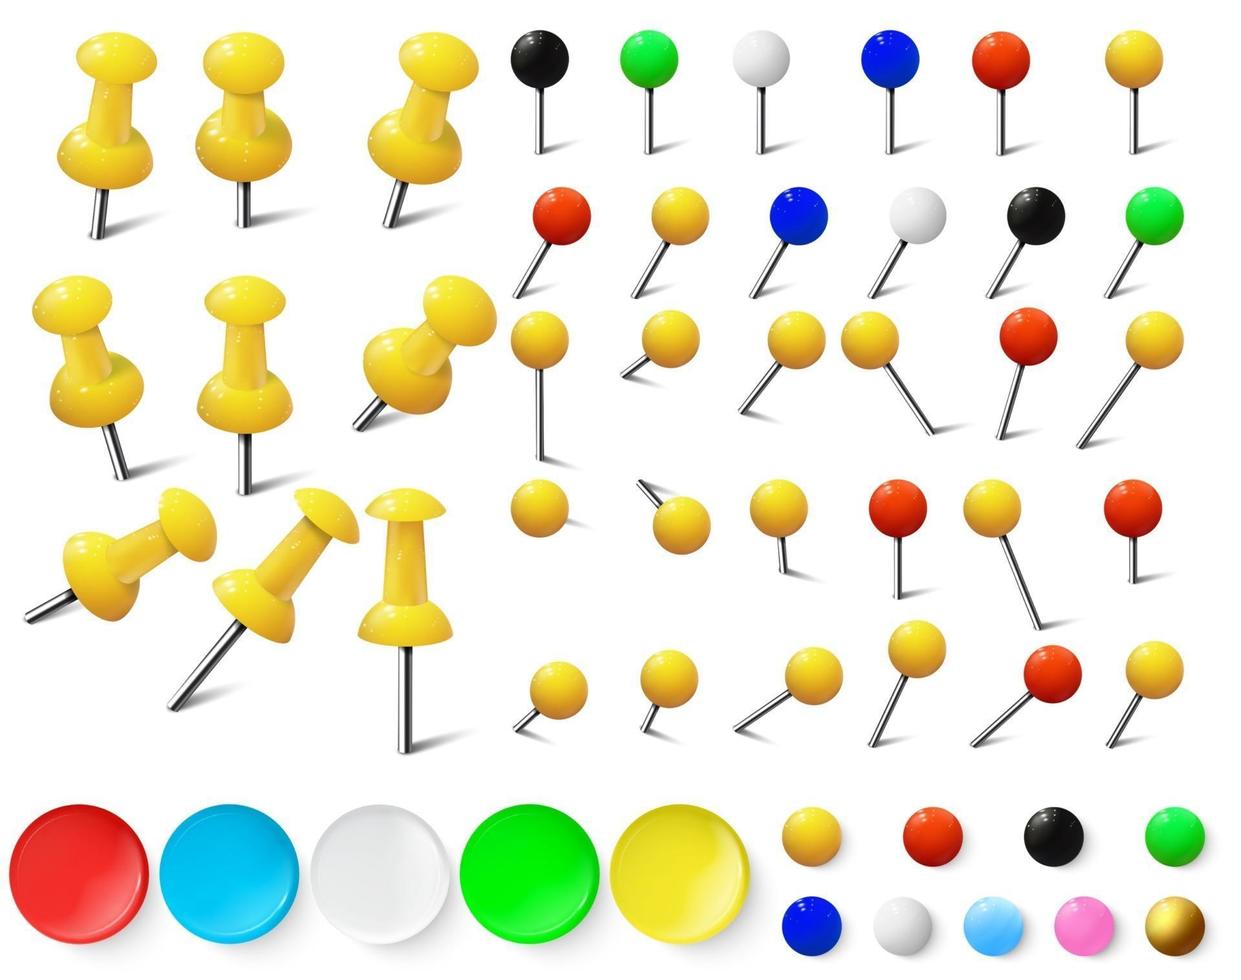 Colored various pushpins, map tacks and pins vector